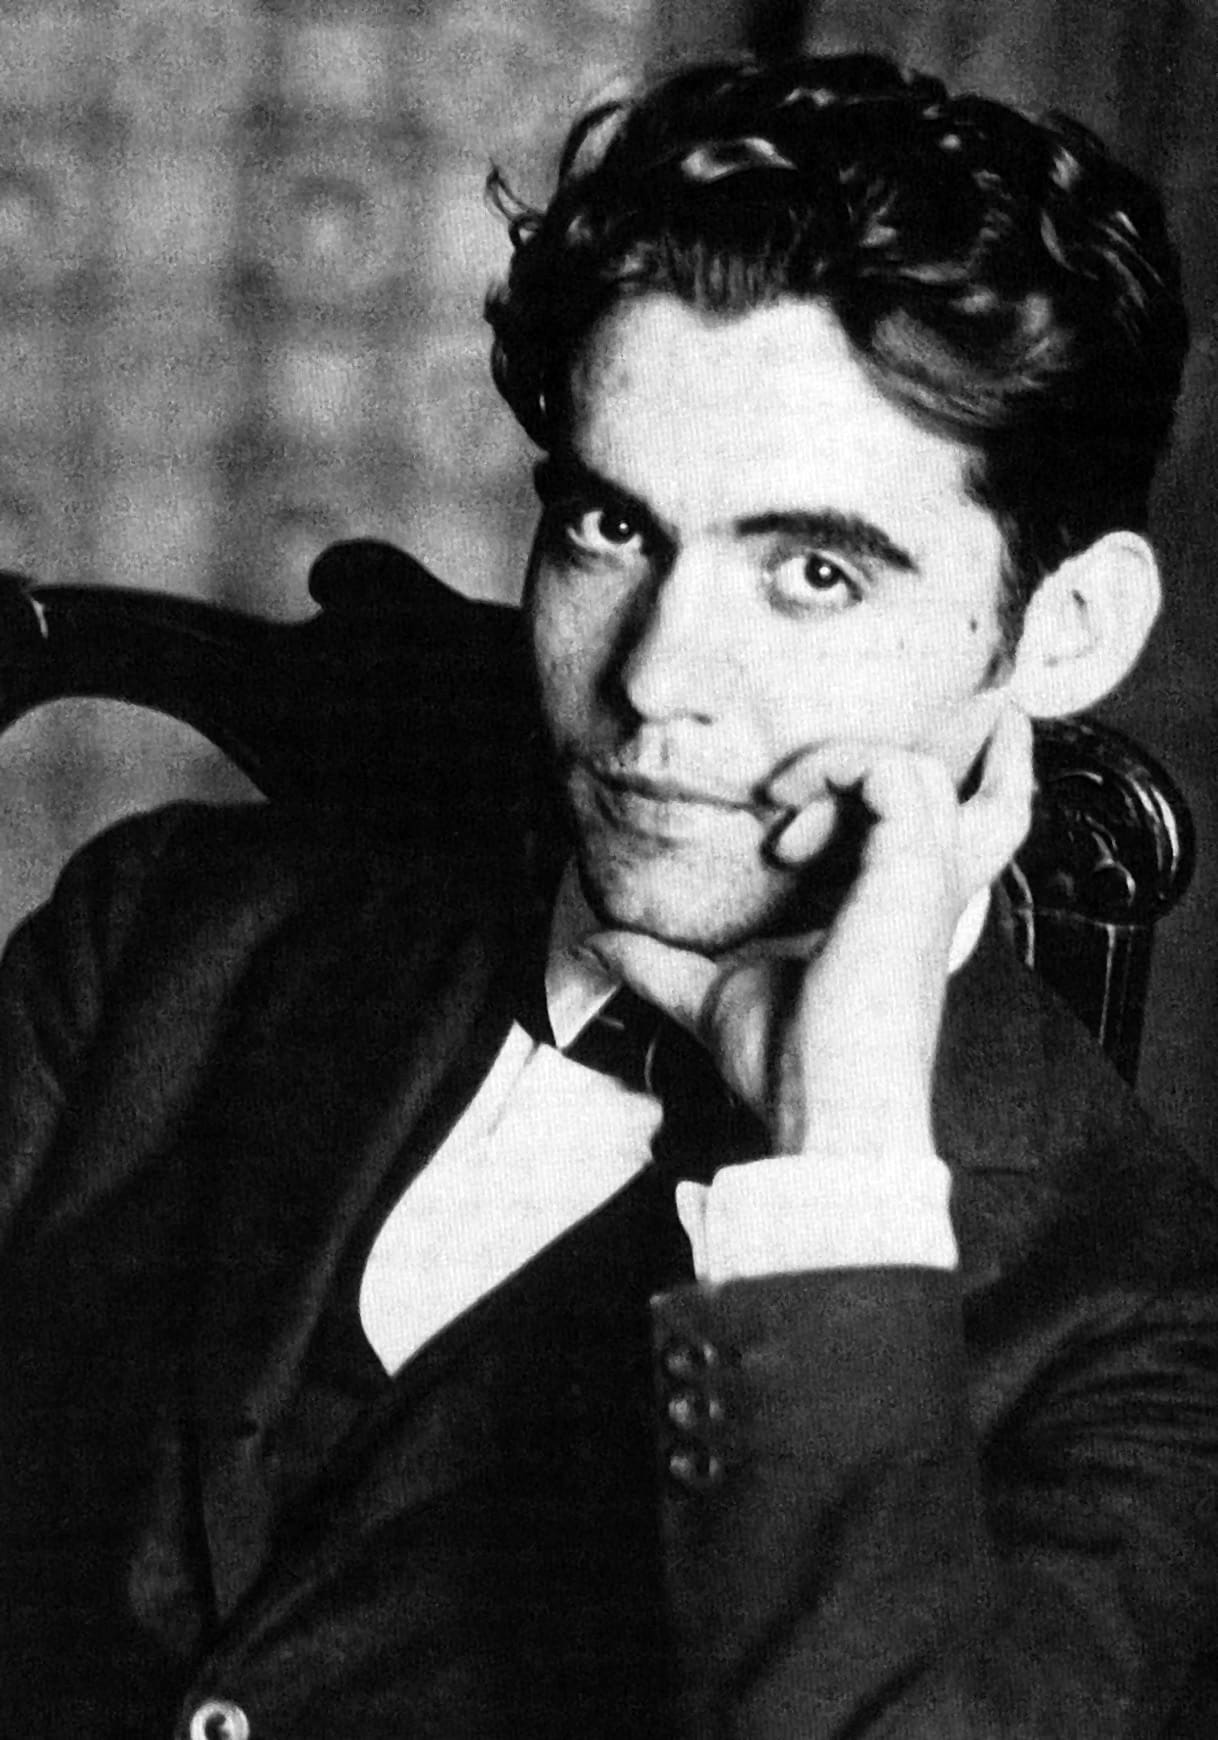 Declarados BIC un conjunto de 13 dibujos y un manuscrito de Federico García Lorca